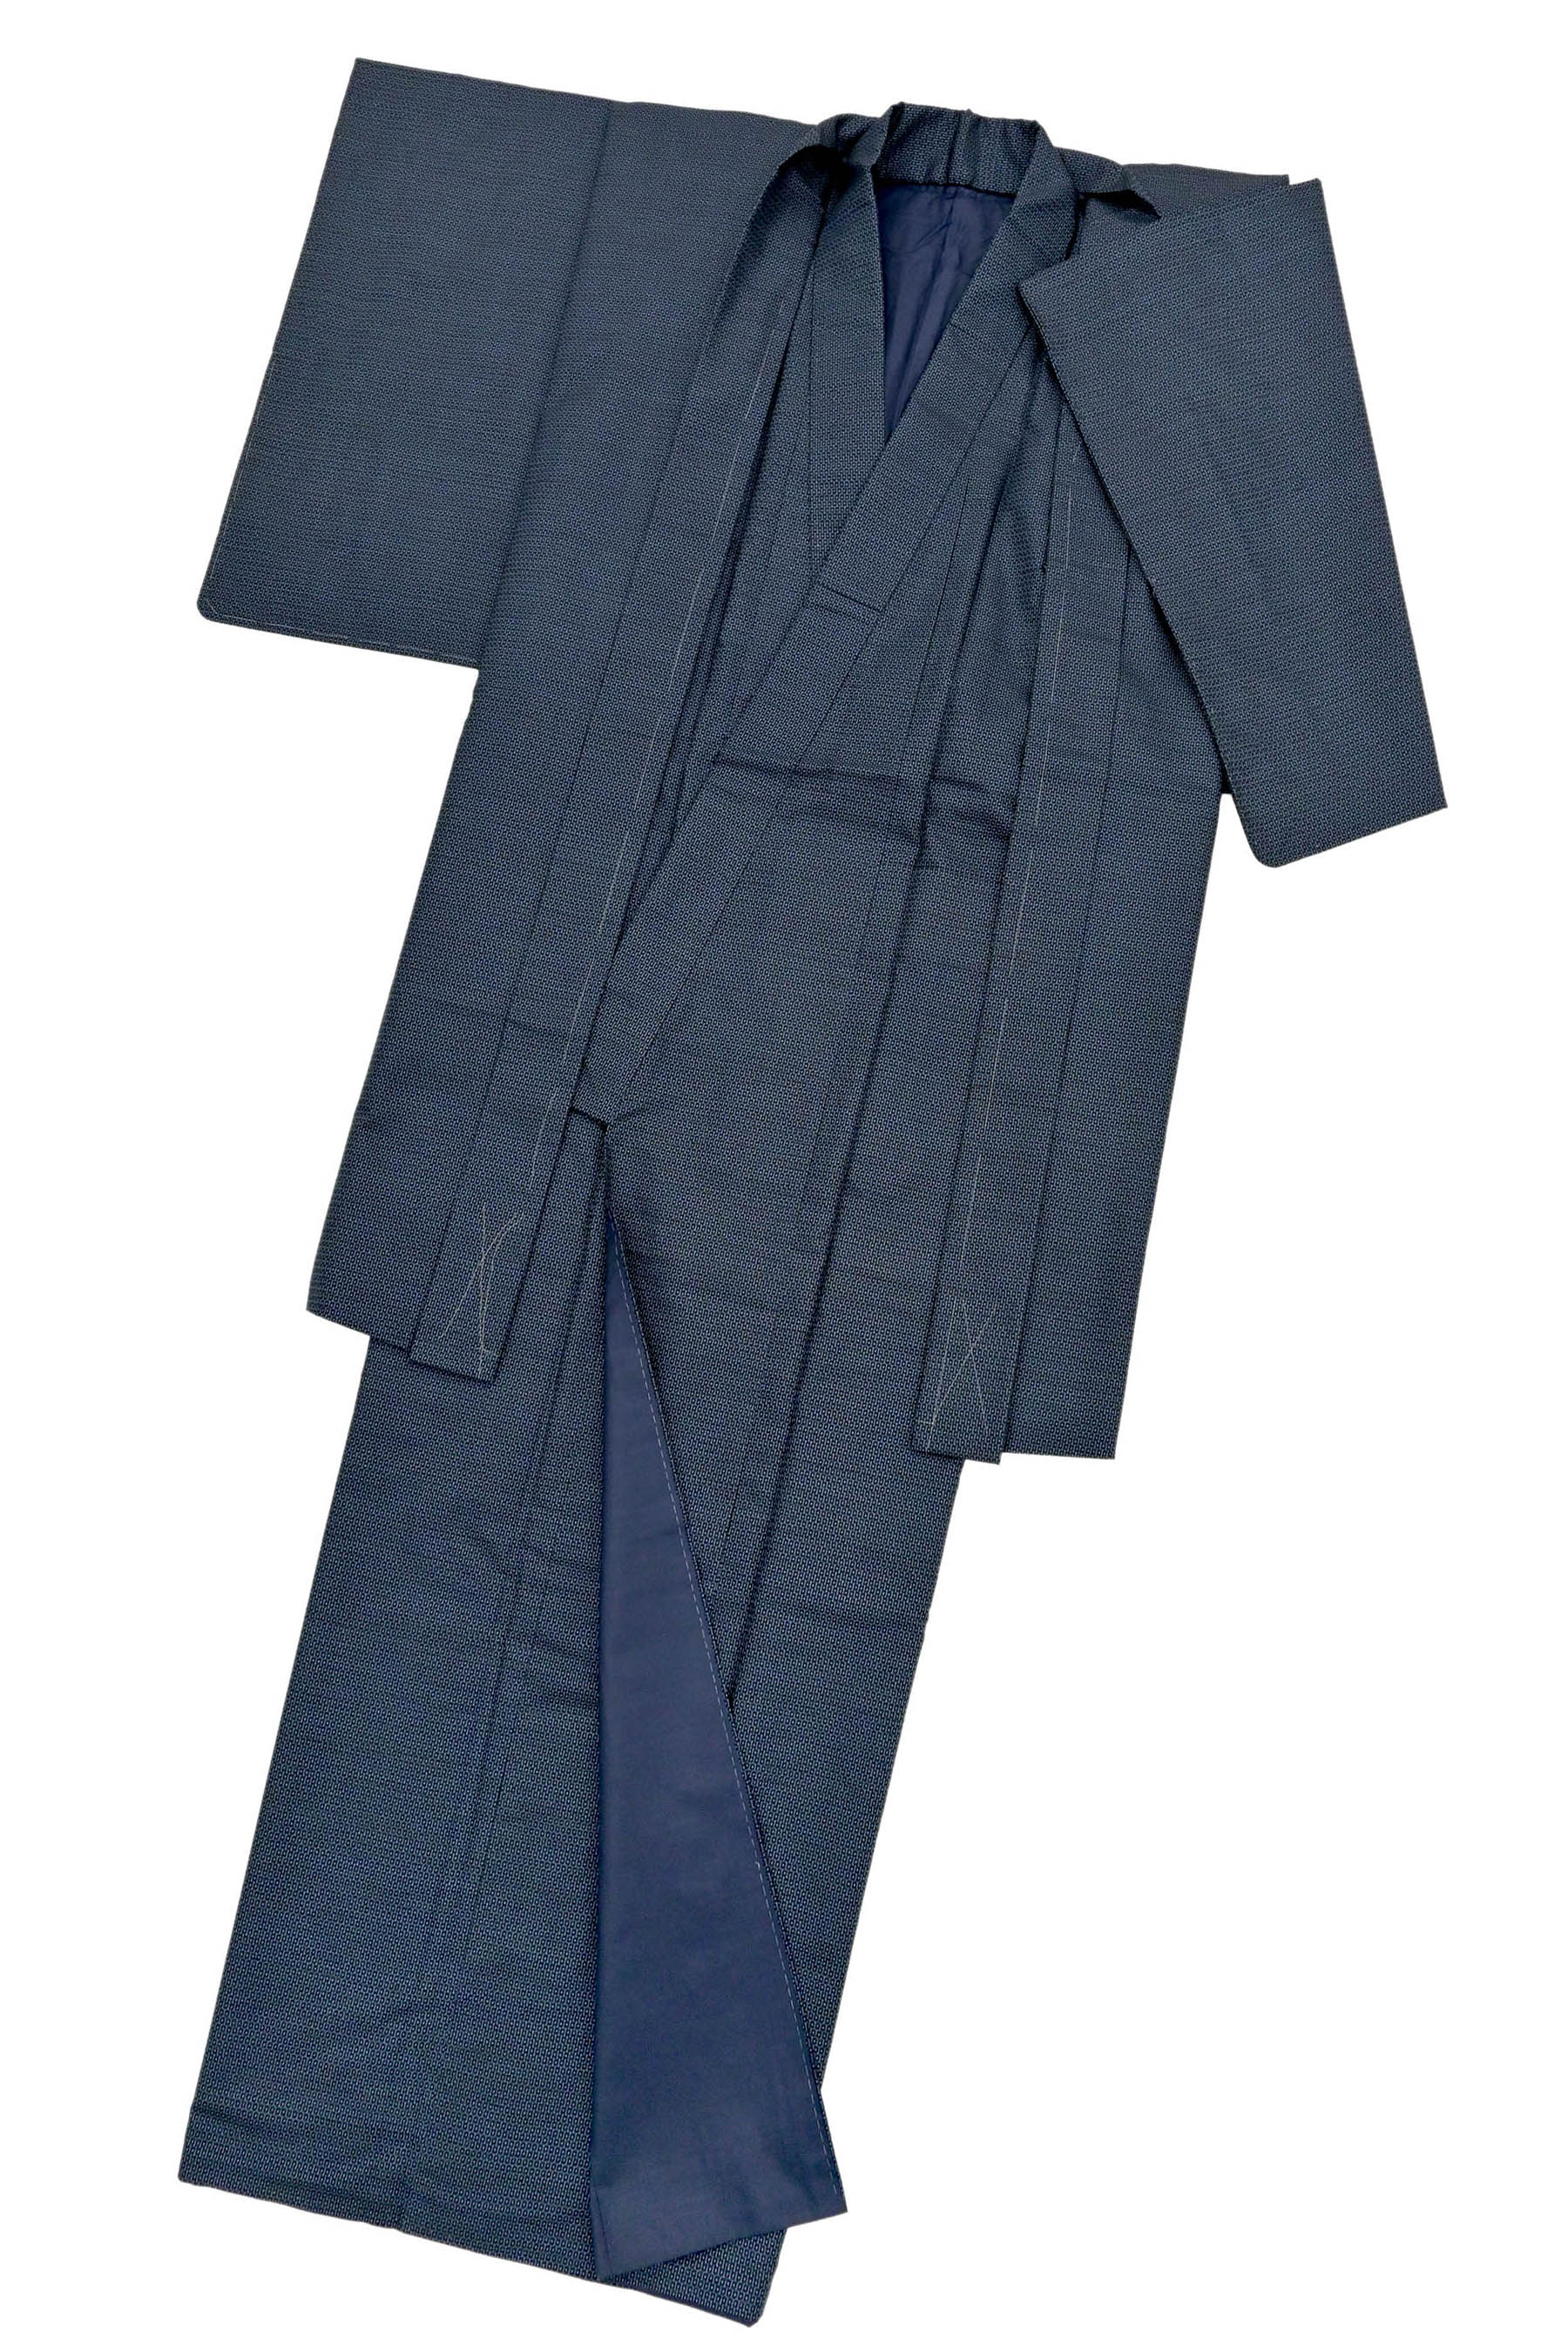 男着物 大島紬アンサンブル 正絹大島紬 藍の亀甲絣 札絵の羽裏柄 M309 